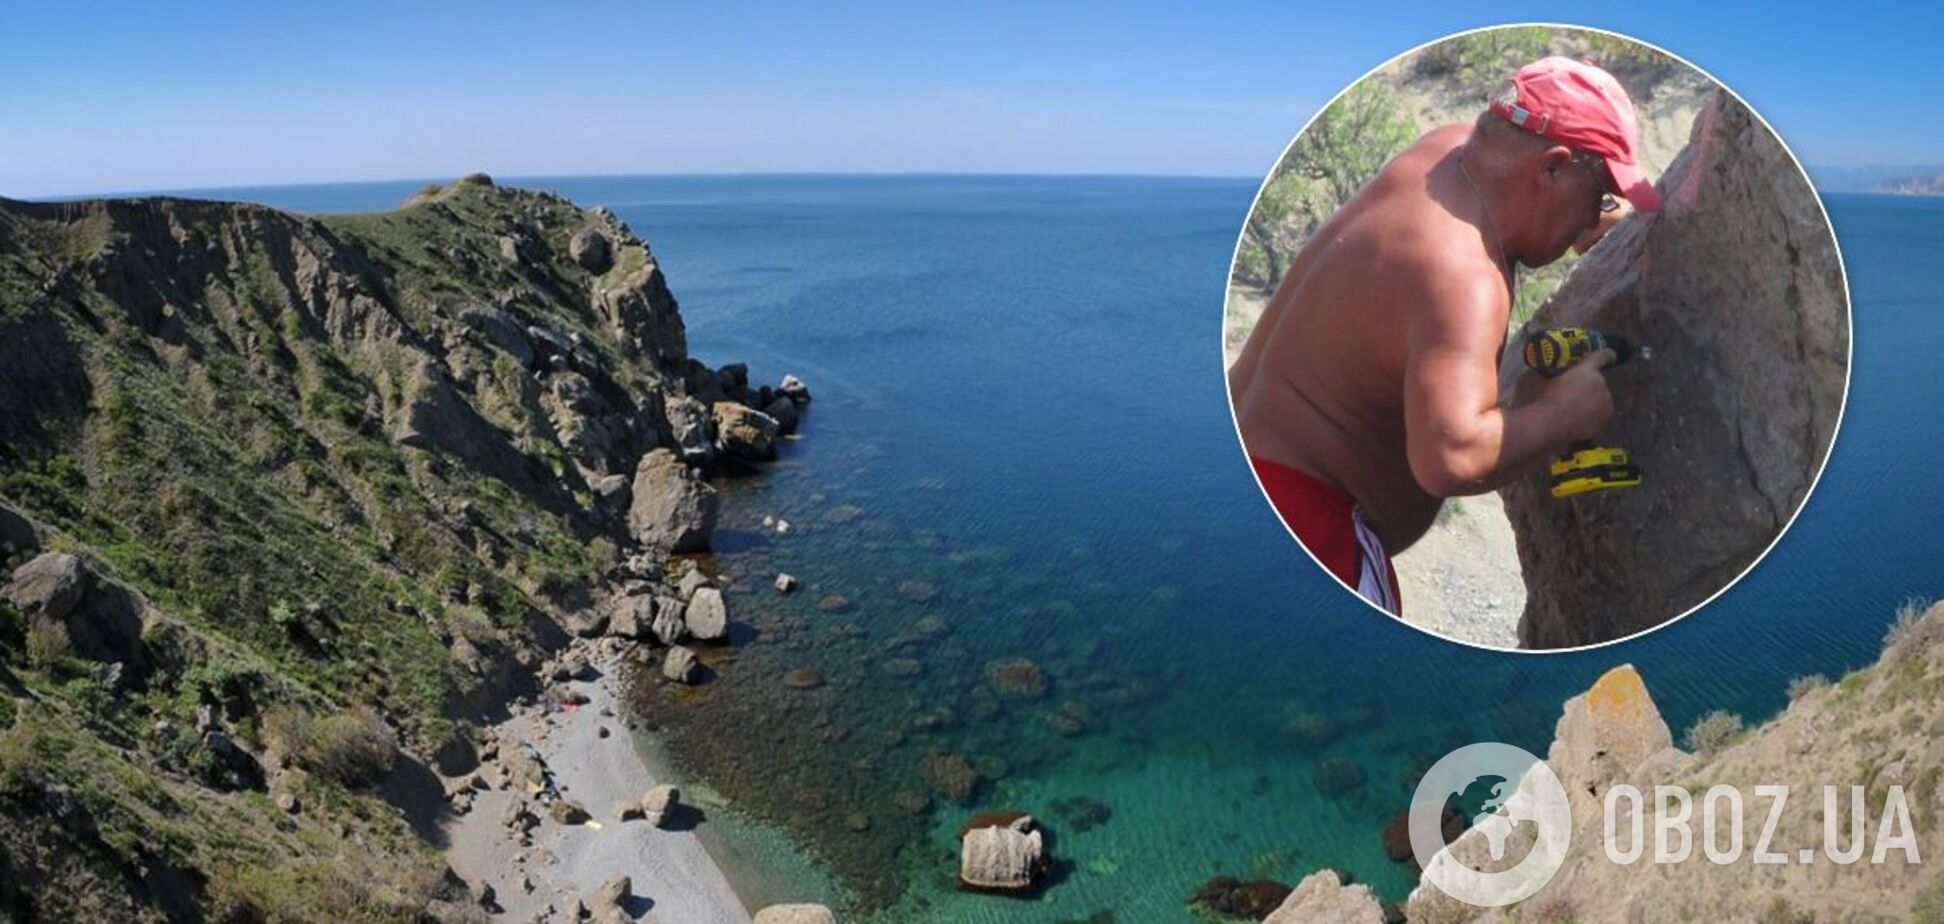 Турист в Крыму просверлил скалу и назвал ее в свою честь